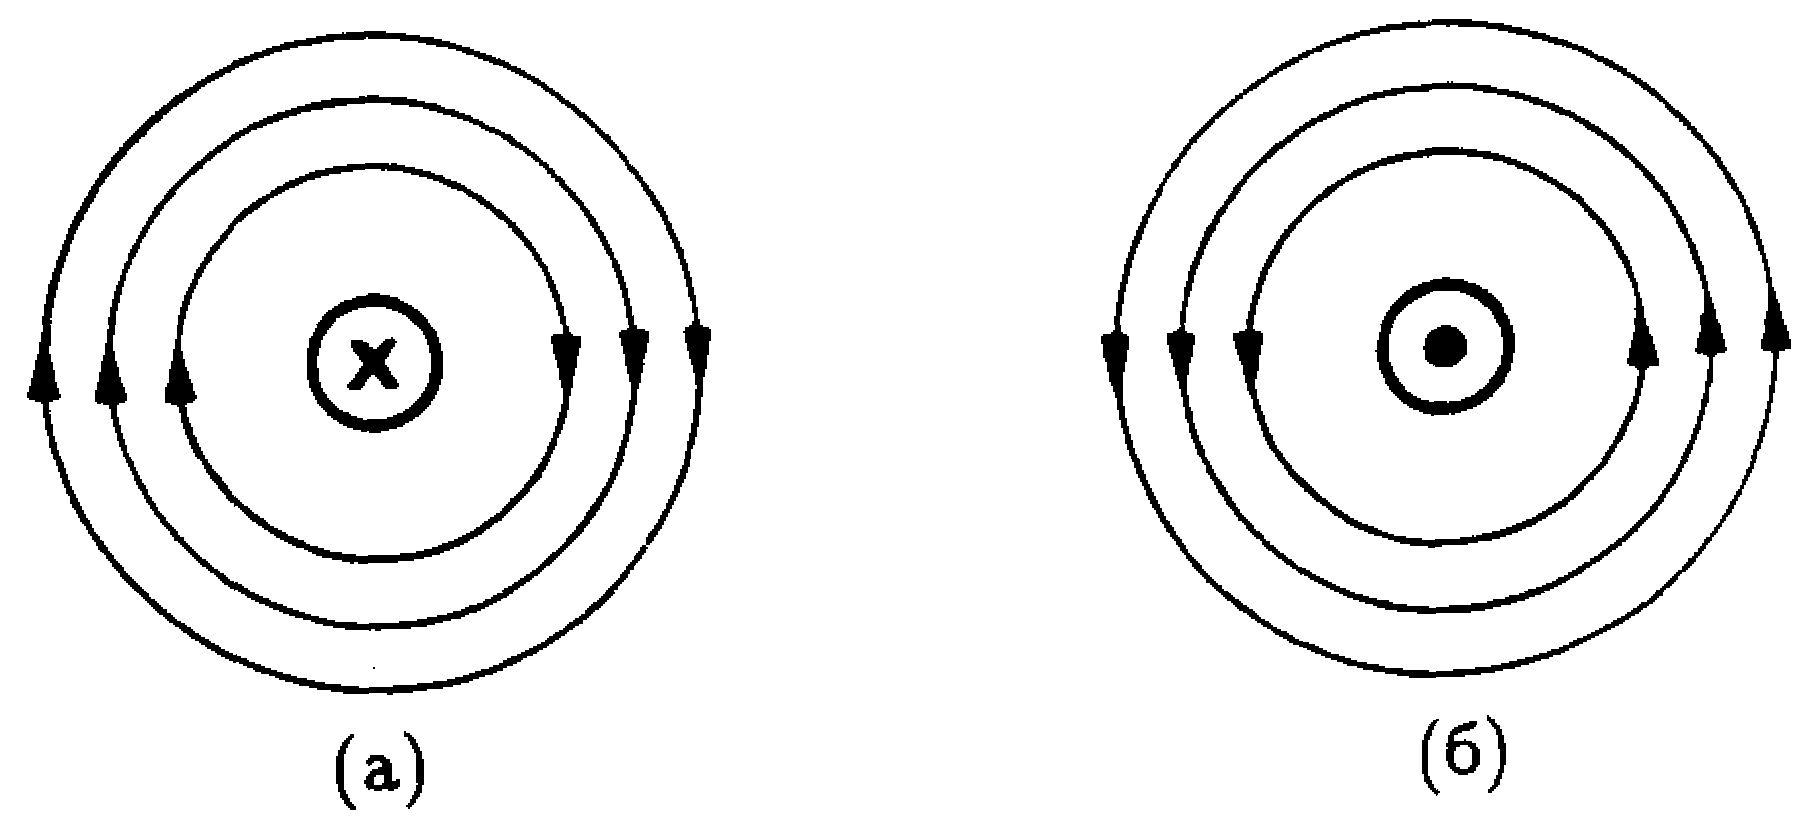 Определите направление магнитных линий стрелкой указано